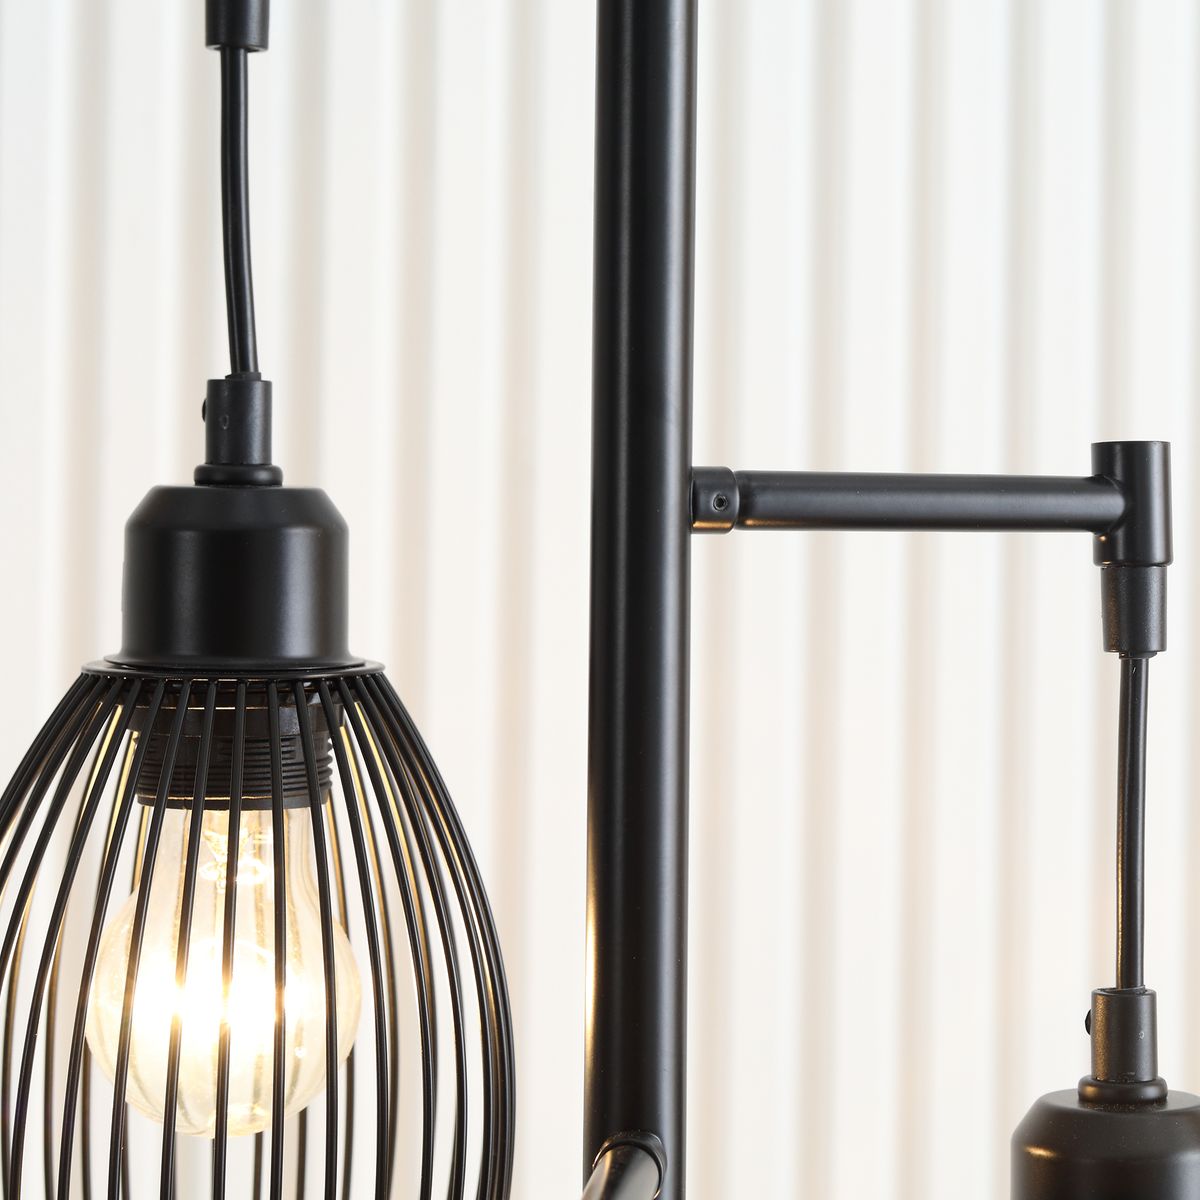 HOMCOM Lampe lampadaire à arc salon courbée - Lampe arceau moderne en métal  - Lampadaire sur pied métal lin noir pas cher 